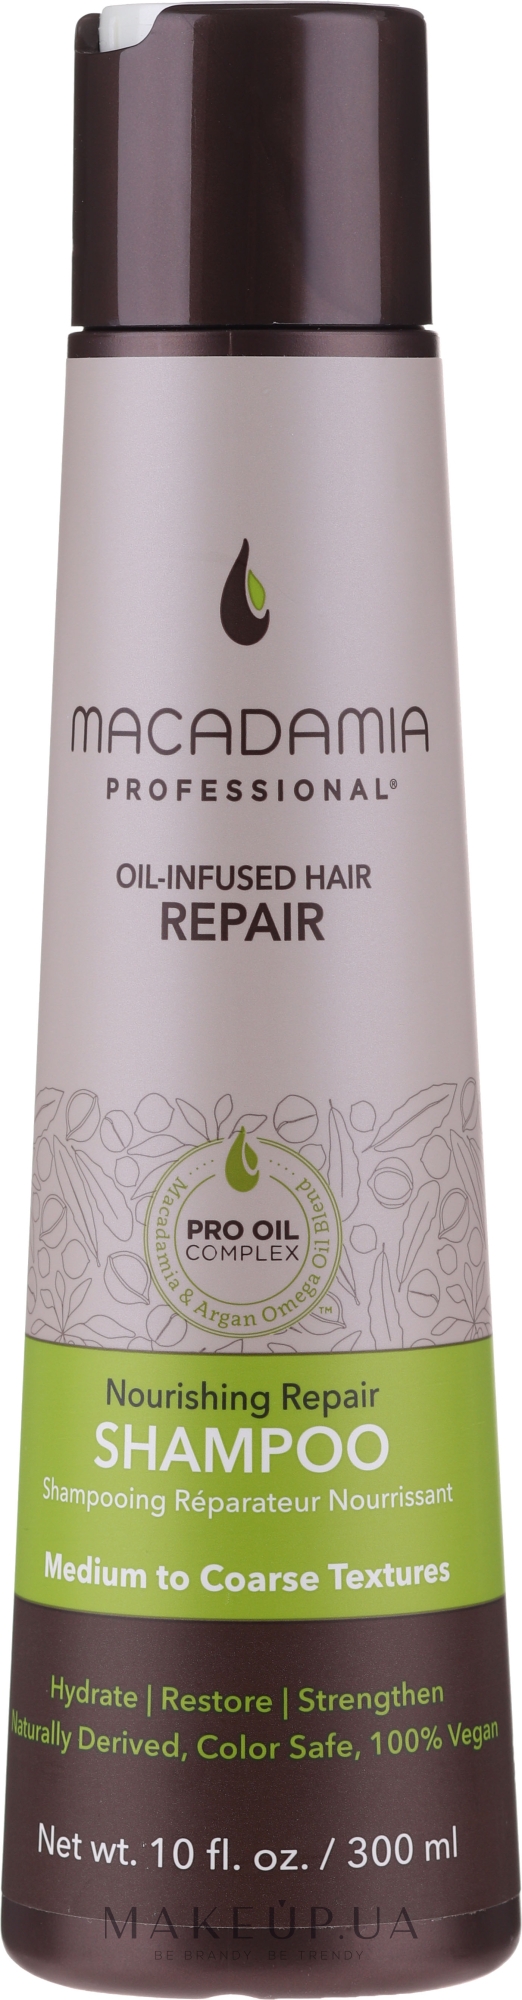 Живильний і відновлювальний шампунь для волосся - Macadamia Professional Nourishing Repair Shampoo — фото 300ml